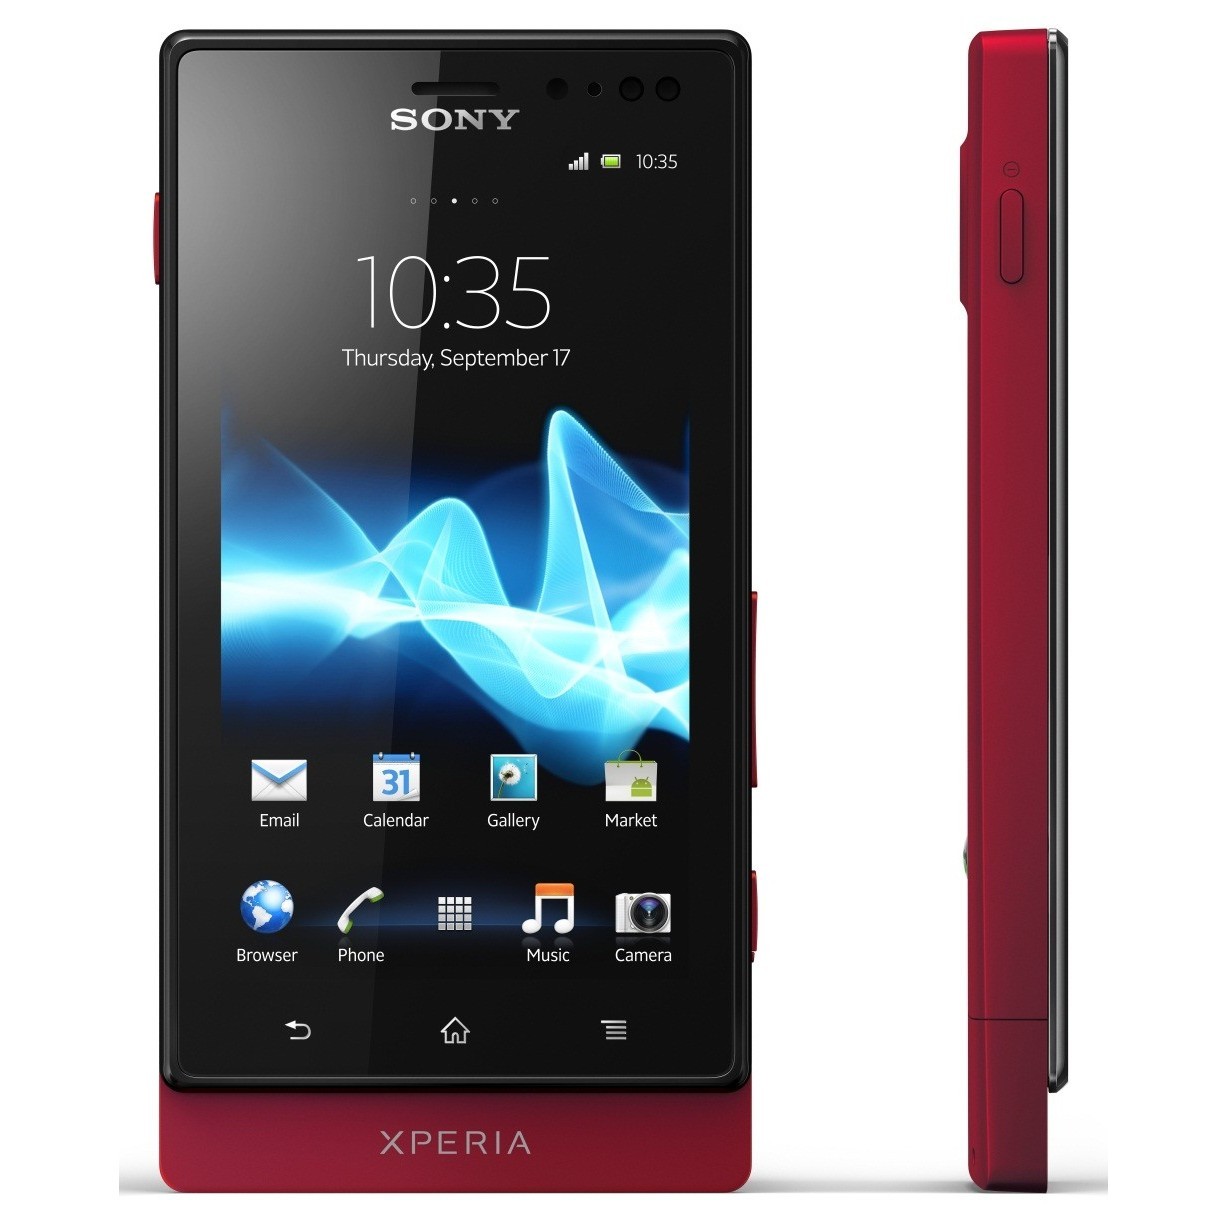 Xperia купить спб. Sony Xperia mt27i. Sony Xperia sola. Sony Xperia sola mt27i. Sony Ericsson Xperia sola mt27i.